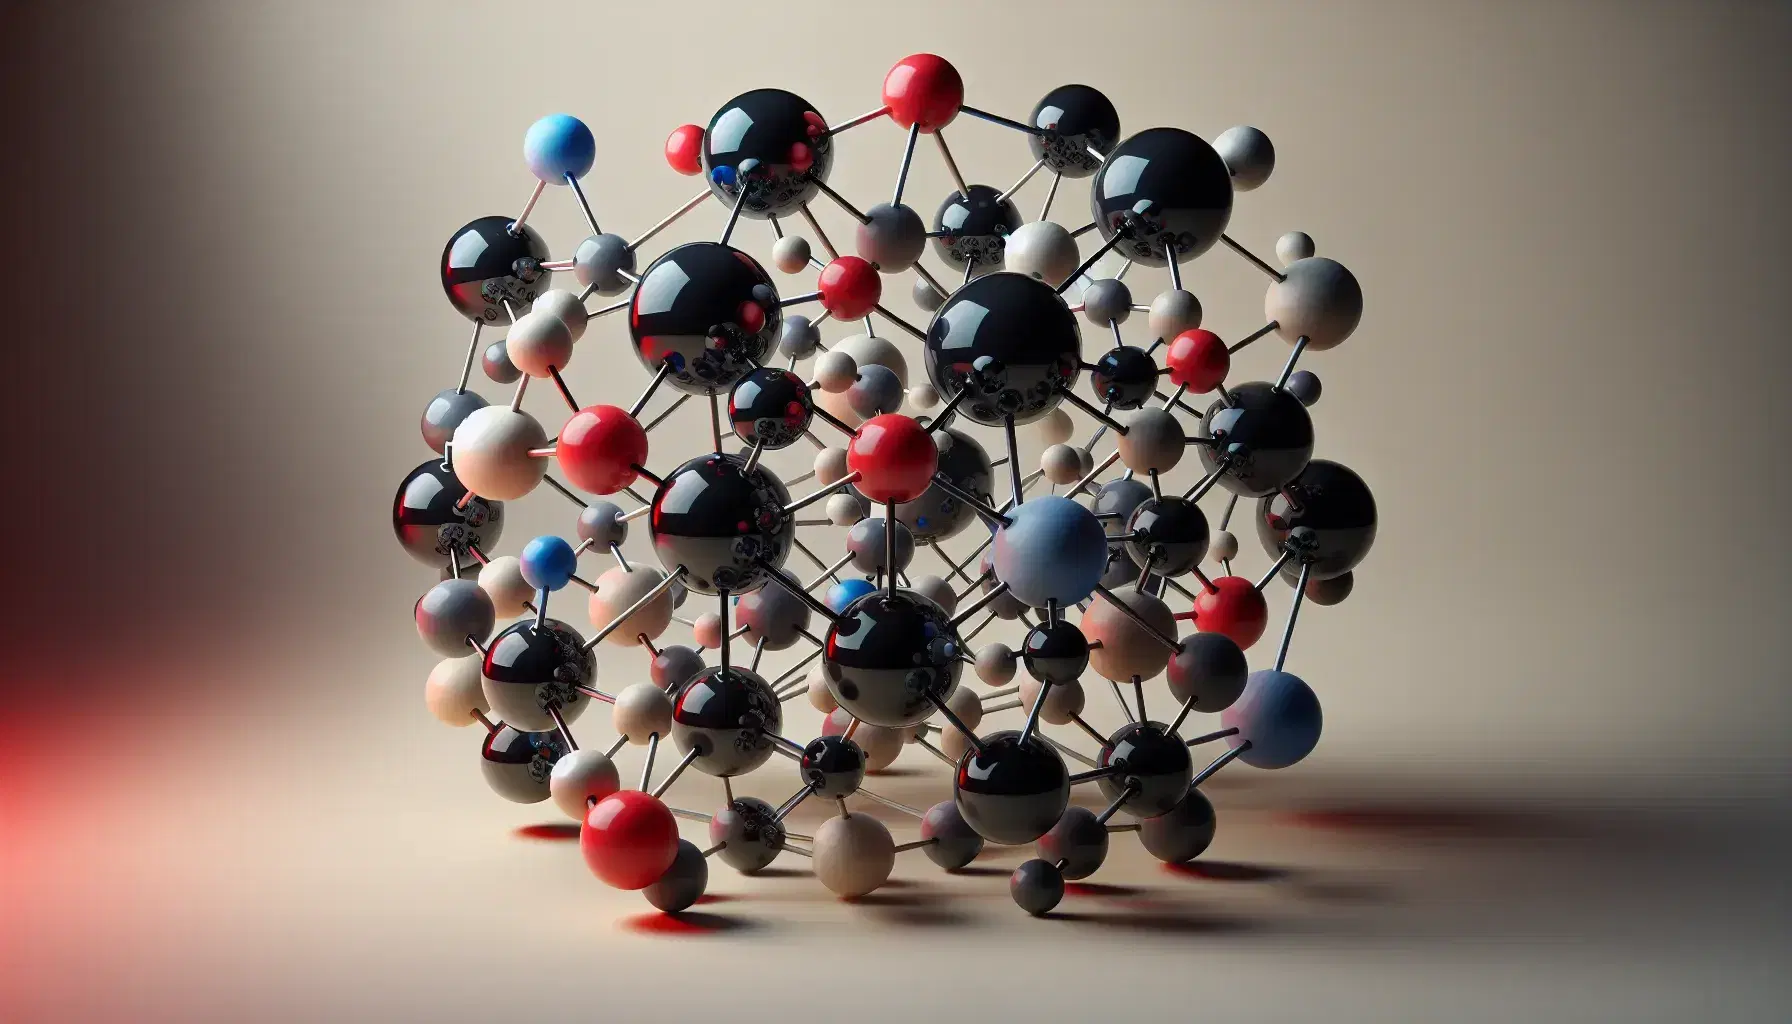 Modelo molecular tridimensional con esferas negras centrales conectadas por varillas grises a esferas menores en rojo, blanco y azul, reflejando simetría y orden.